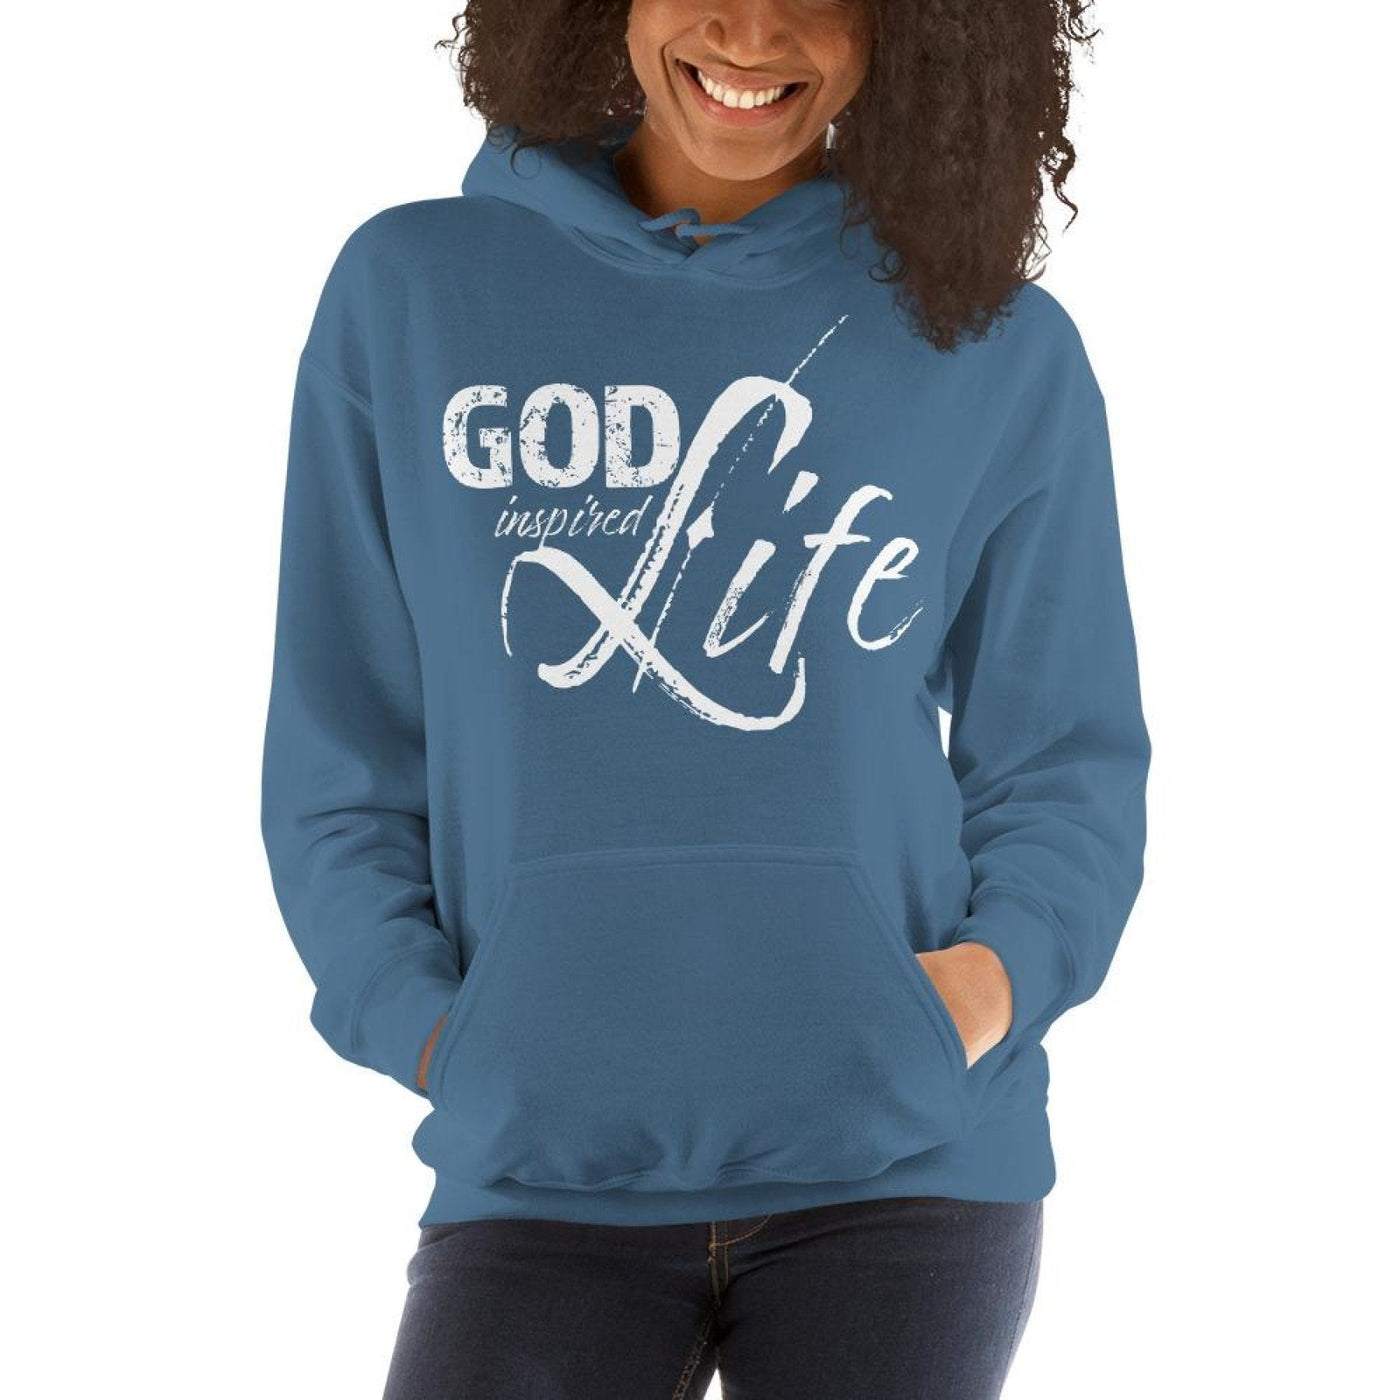 Womens Hoodie - Pullover Sweatshirt - God Inspired Life / White - Womens |